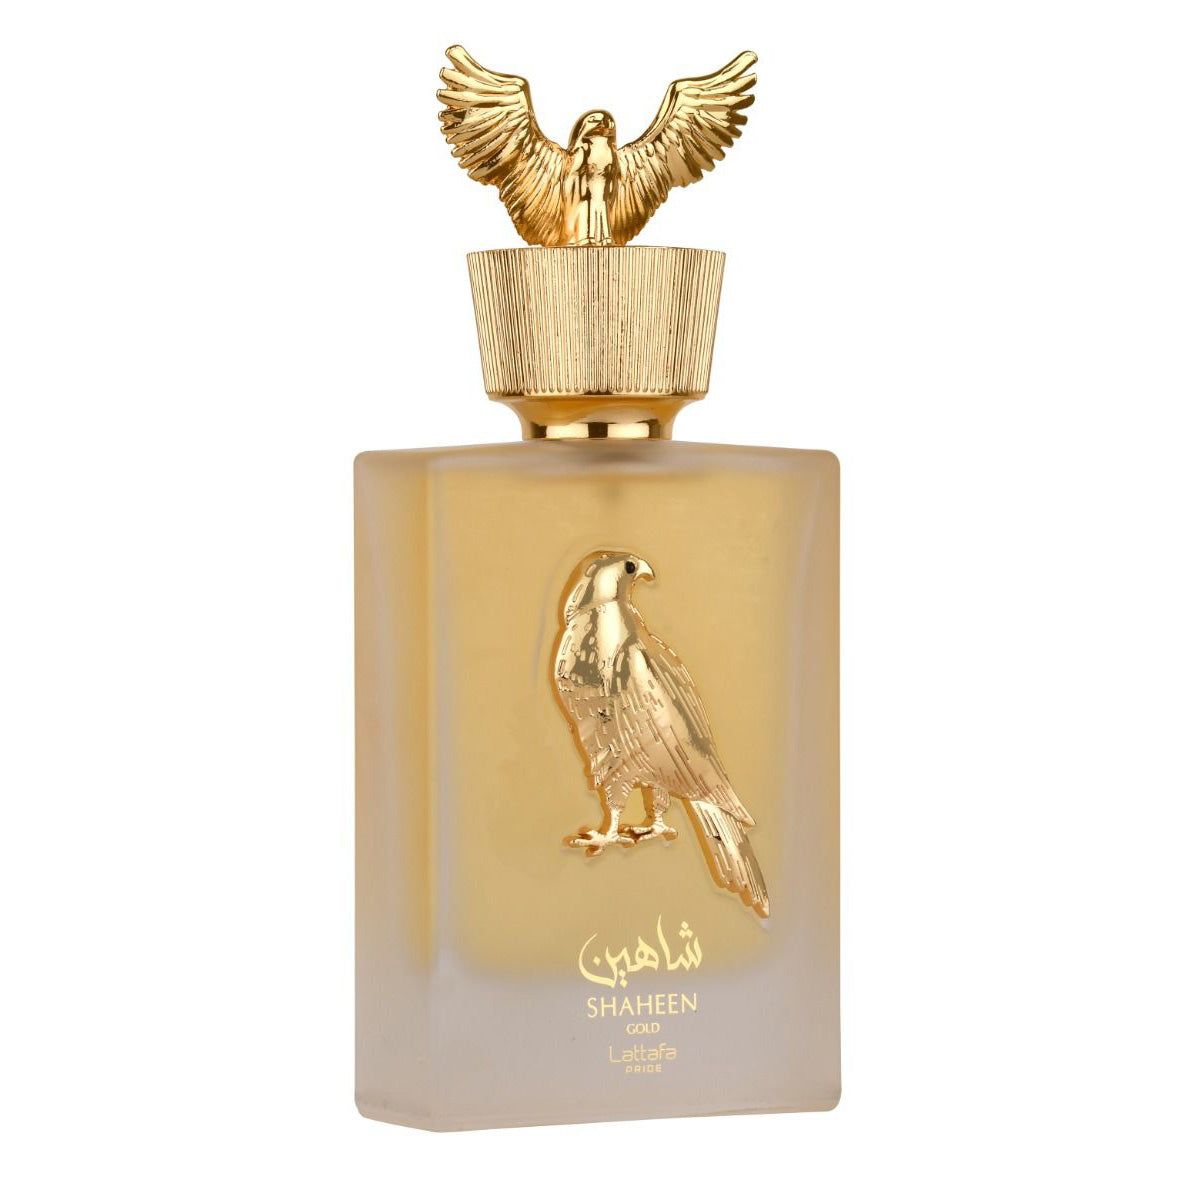 Shaheen Gold Eau De Parfum 100ml Lattafa Pride-Perfume Heaven